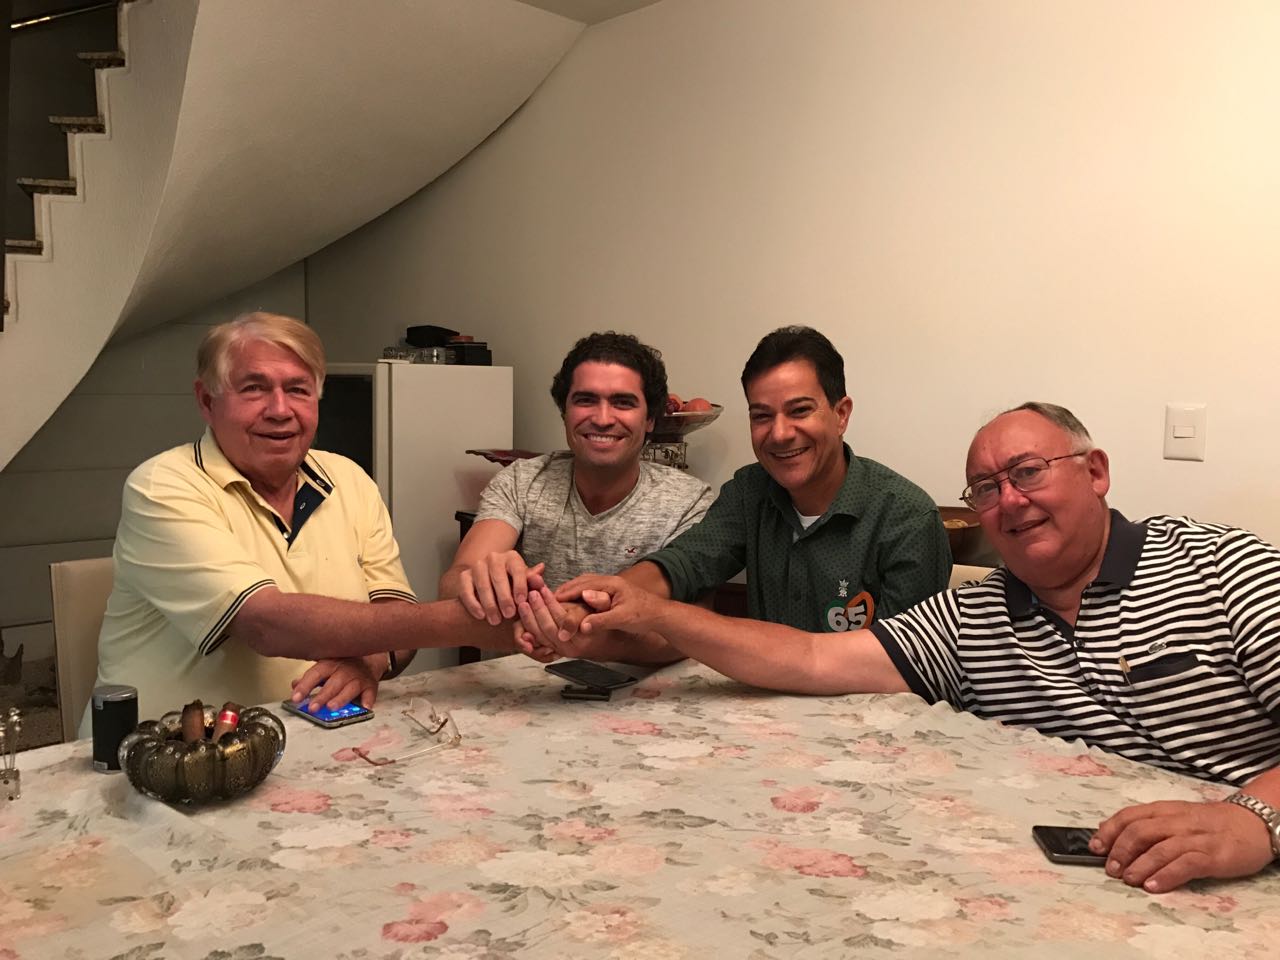 Newtão, Newtinho, Carlin e Teteco (Presidente da Câmara Municipal de Contagem)